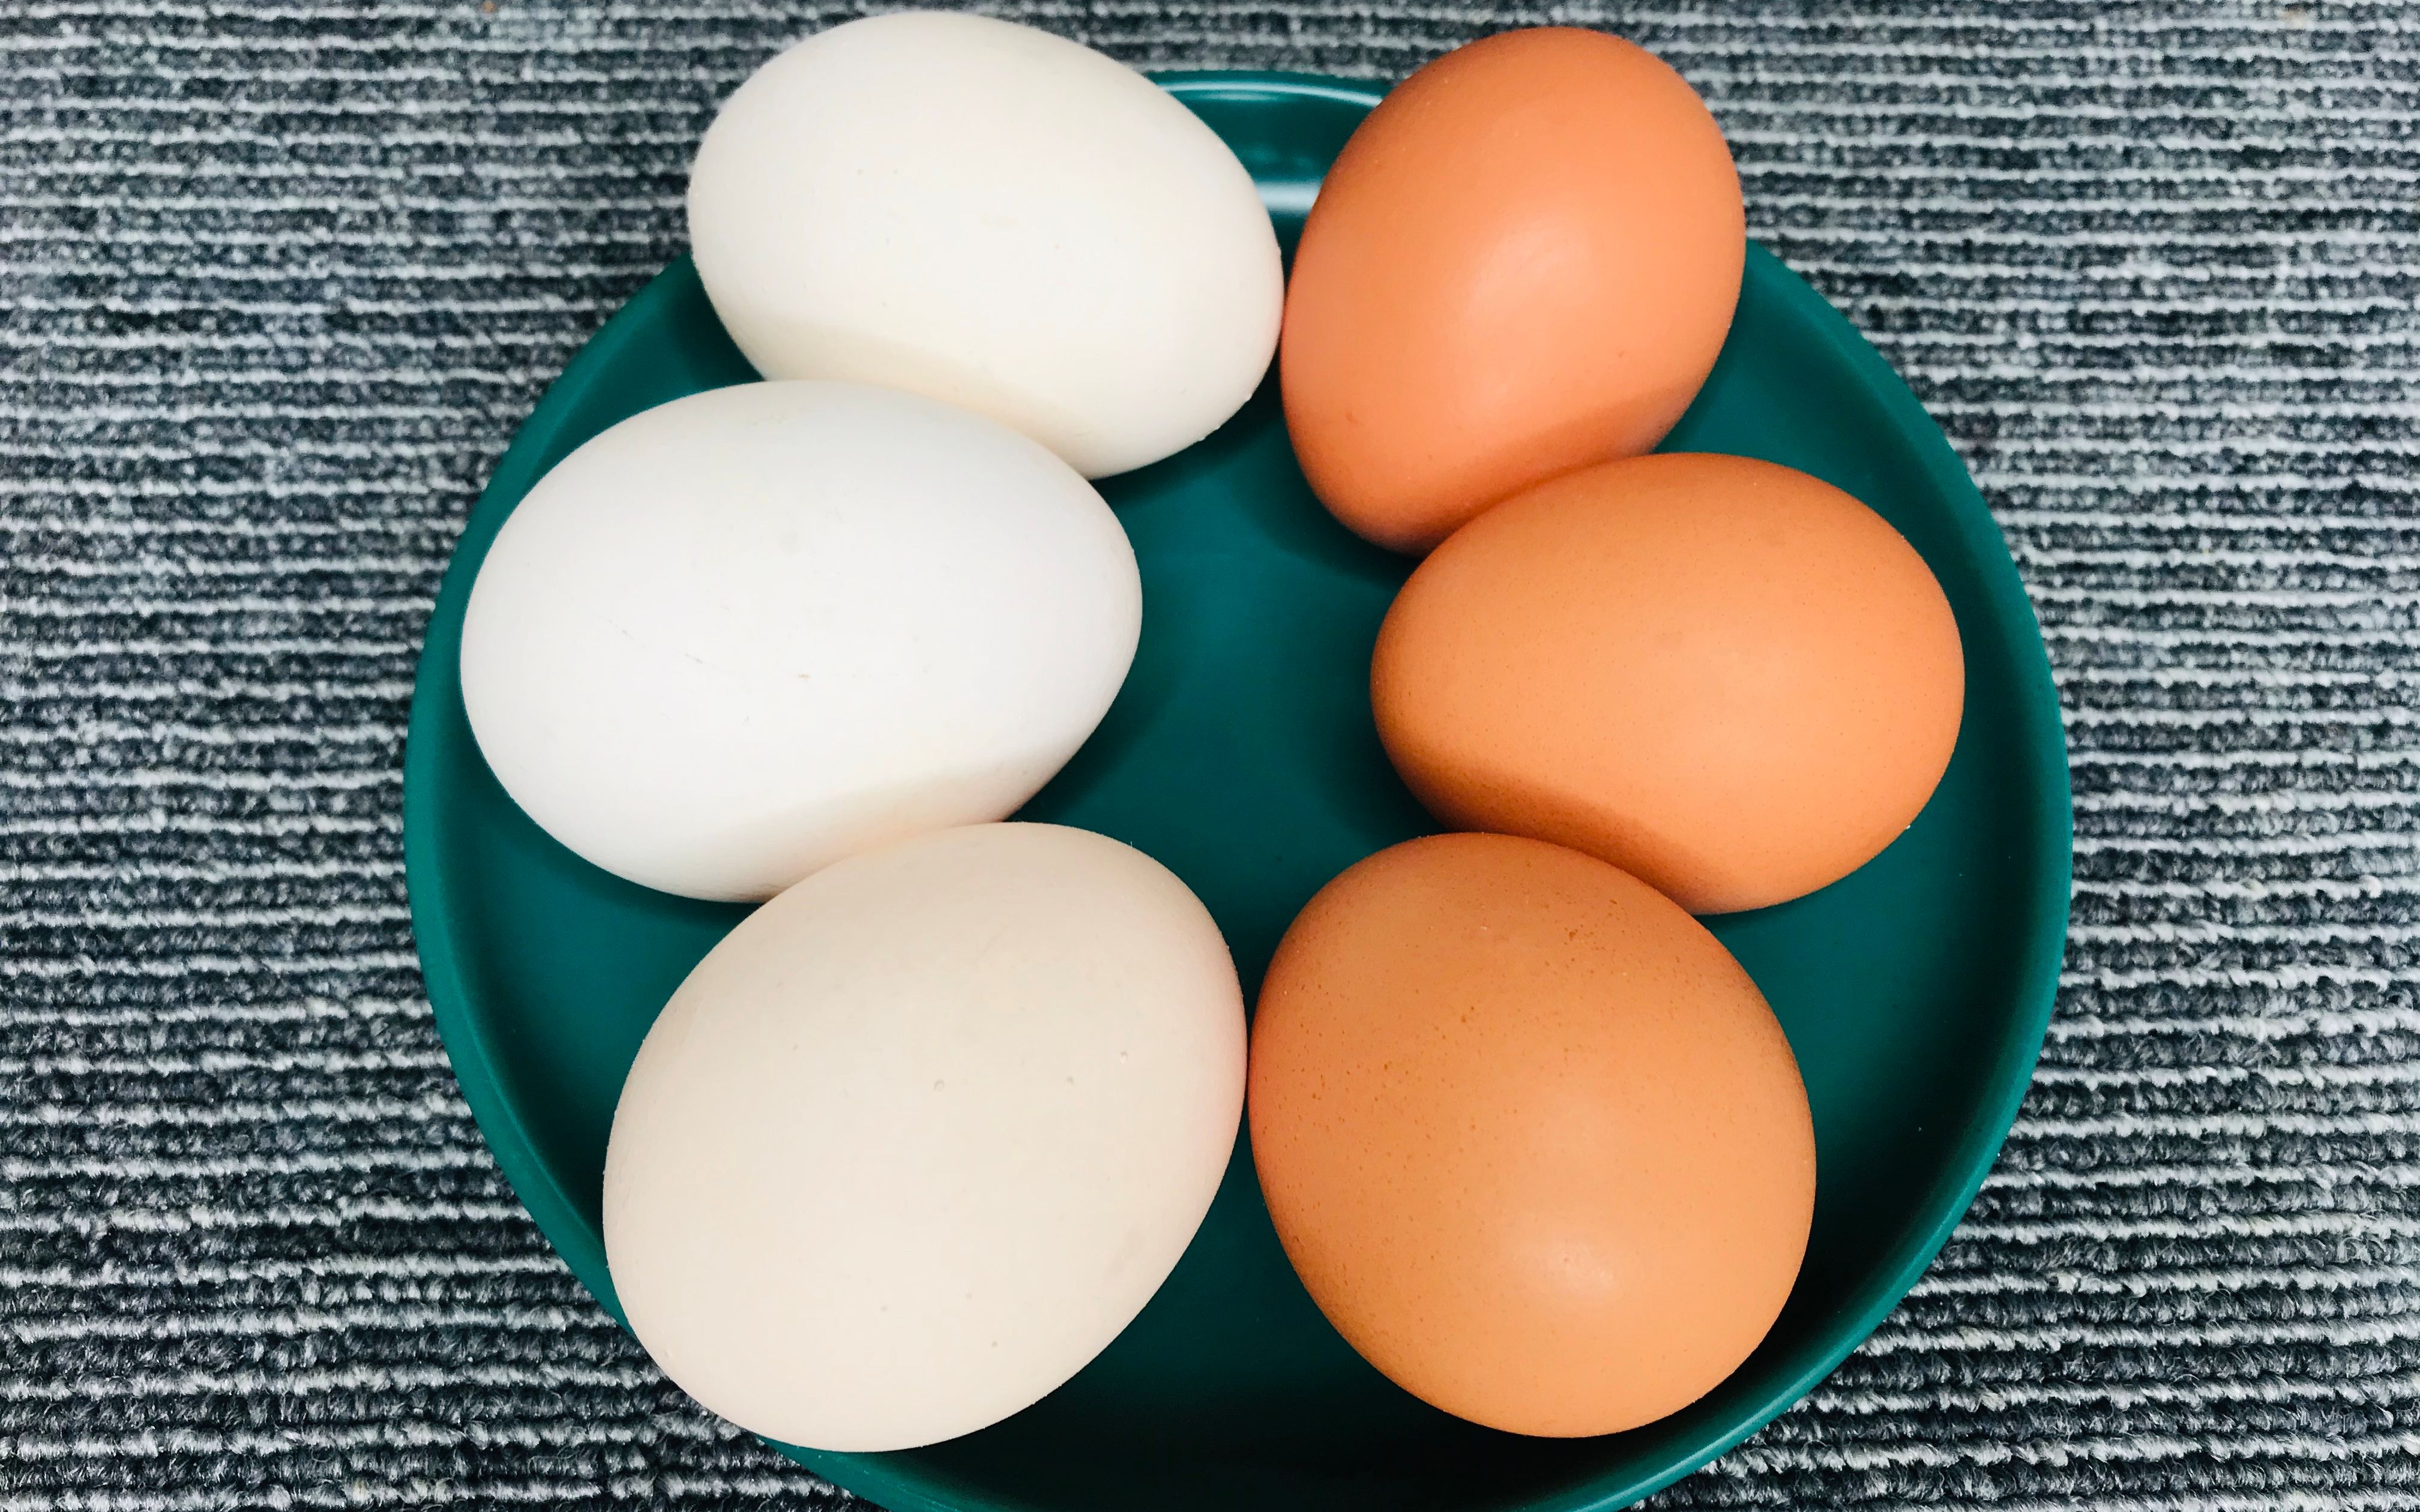 红皮鸡蛋和白皮鸡蛋有啥区别那种鸡蛋营养价值高长见识了